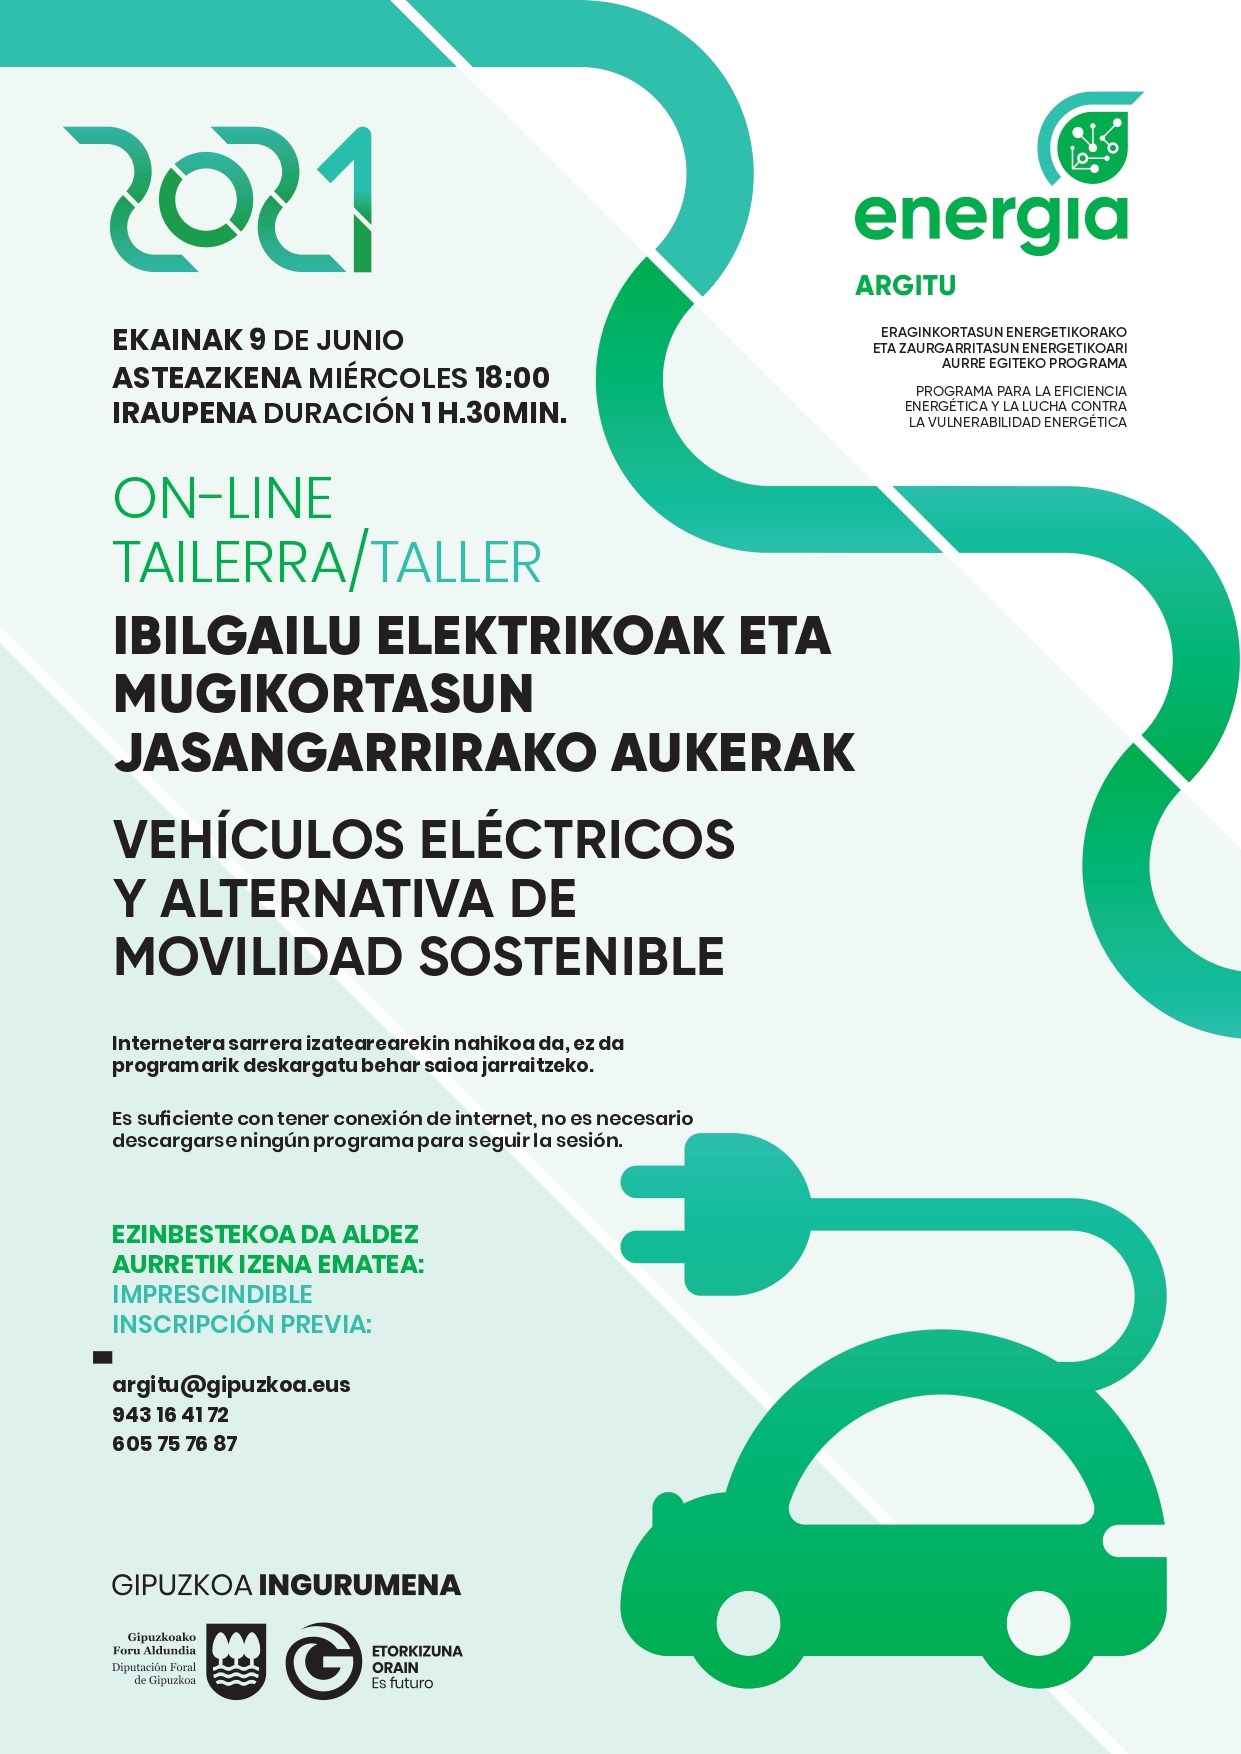 Taller on-line: Vehículos eléctricos y alternativas de movilidad sostenible